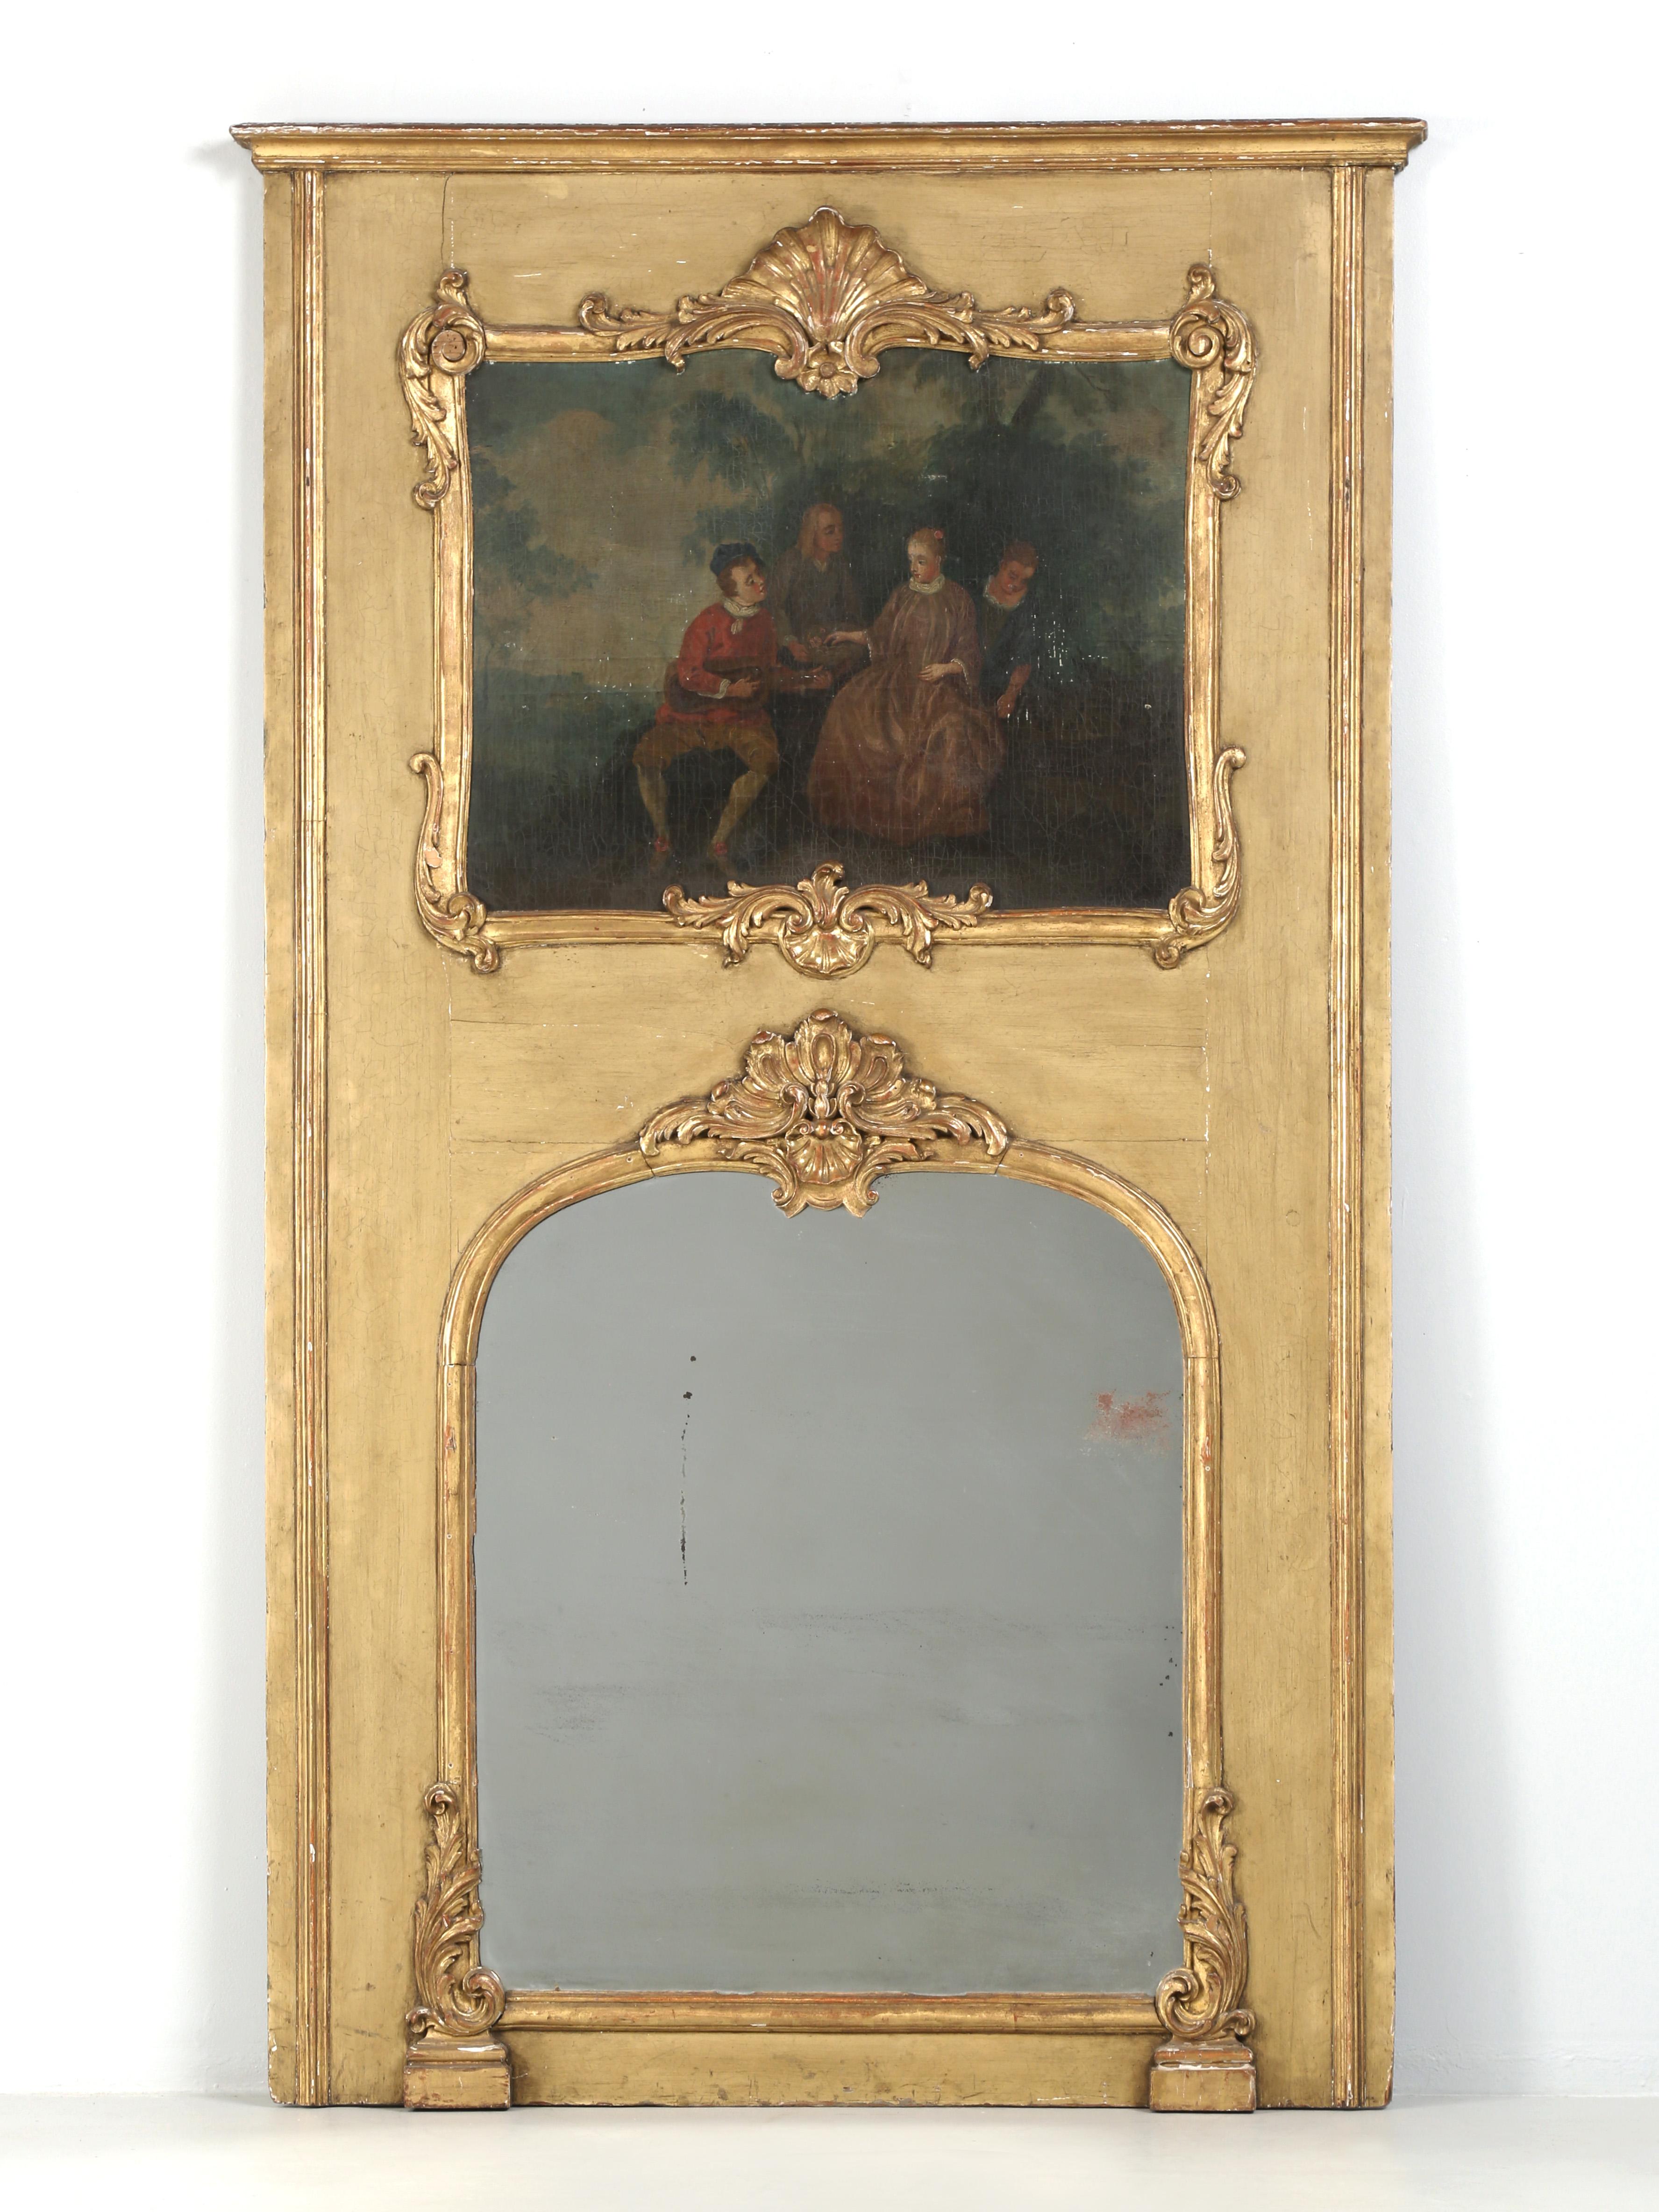 Les miroirs Trumeau sont un type de miroir fabriqué à l'origine par les Français à la fin des années 1700 et nous daterions ce miroir Trumeau ancien de cette période. Le mot Trumeau se définit par l'espace entre deux fenêtres, où un grand Trumeau